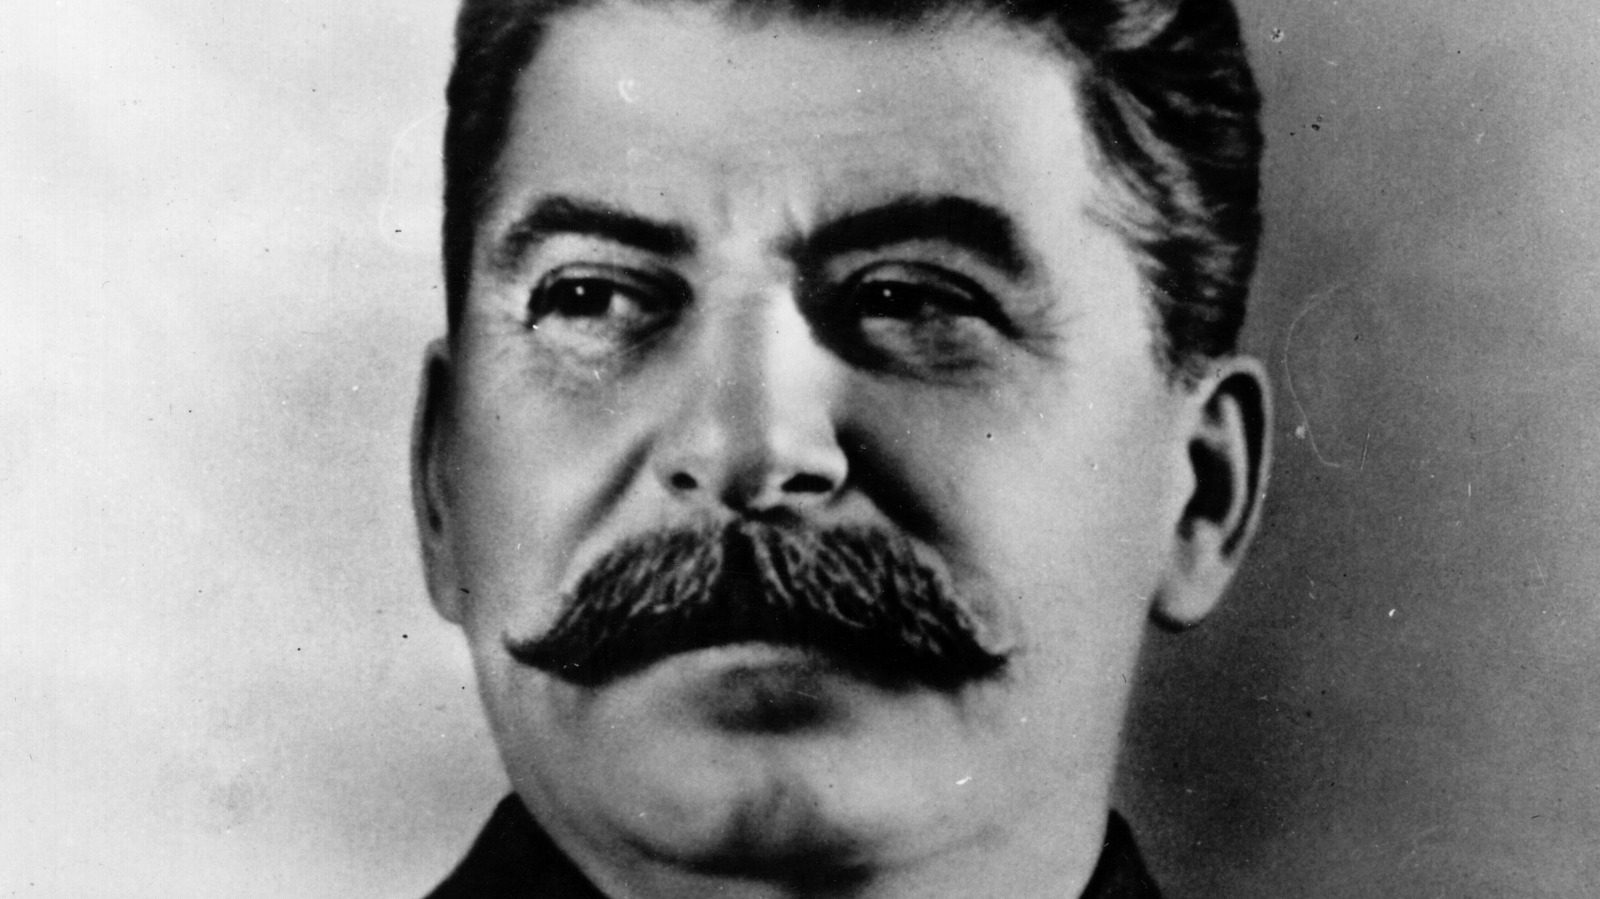 Сталин с прической элвиса